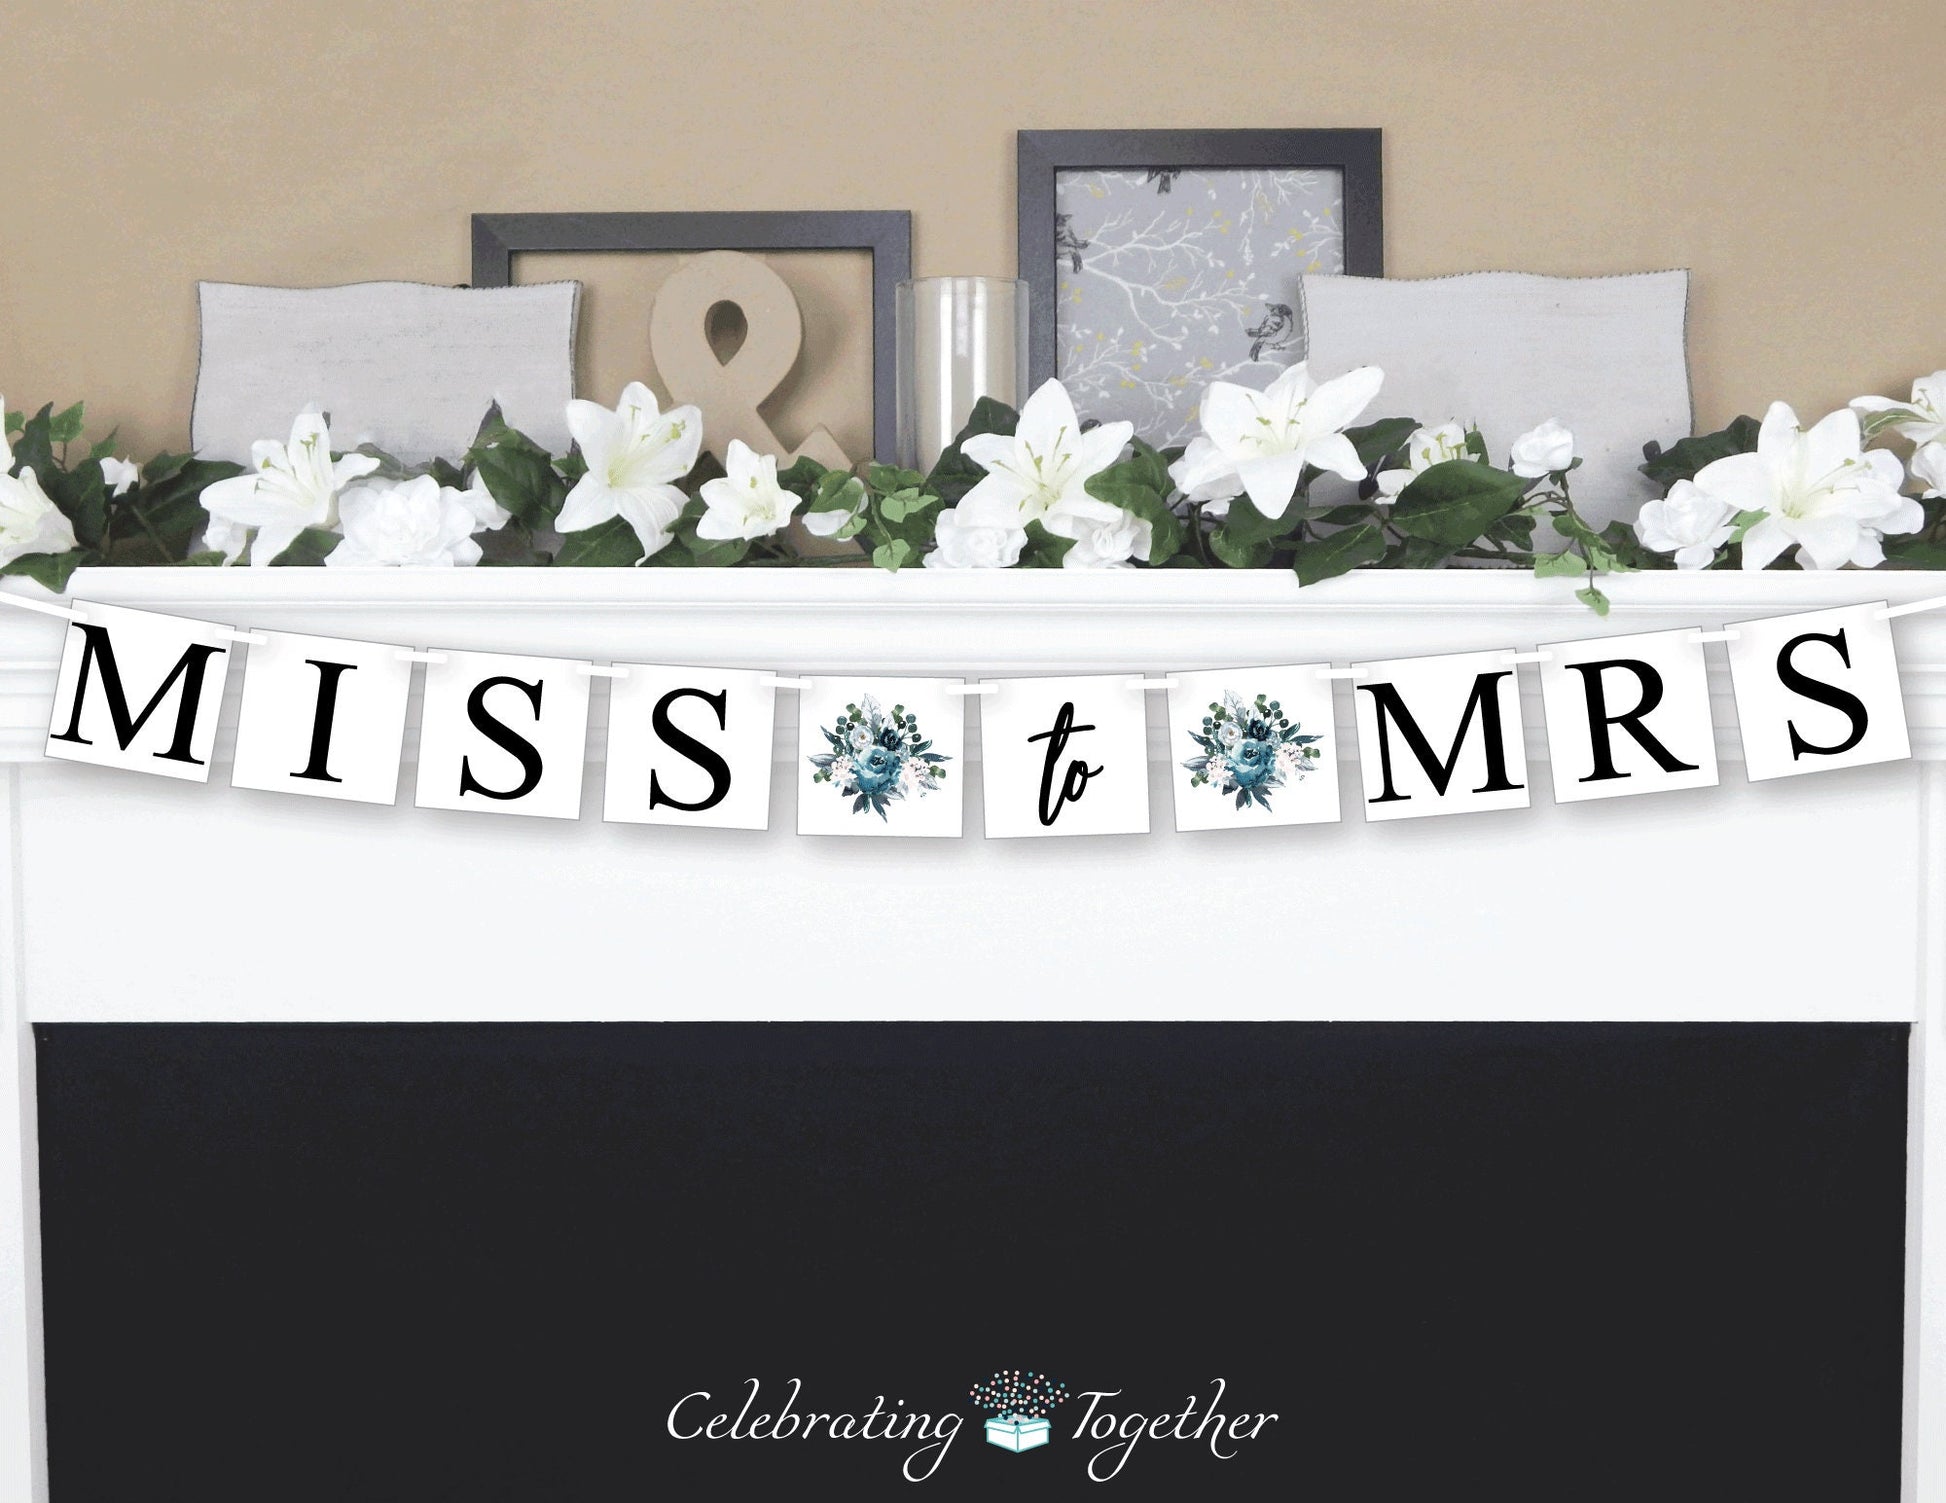 blue bridal shower banner - miss to mrs banner - floral bridal shower decor